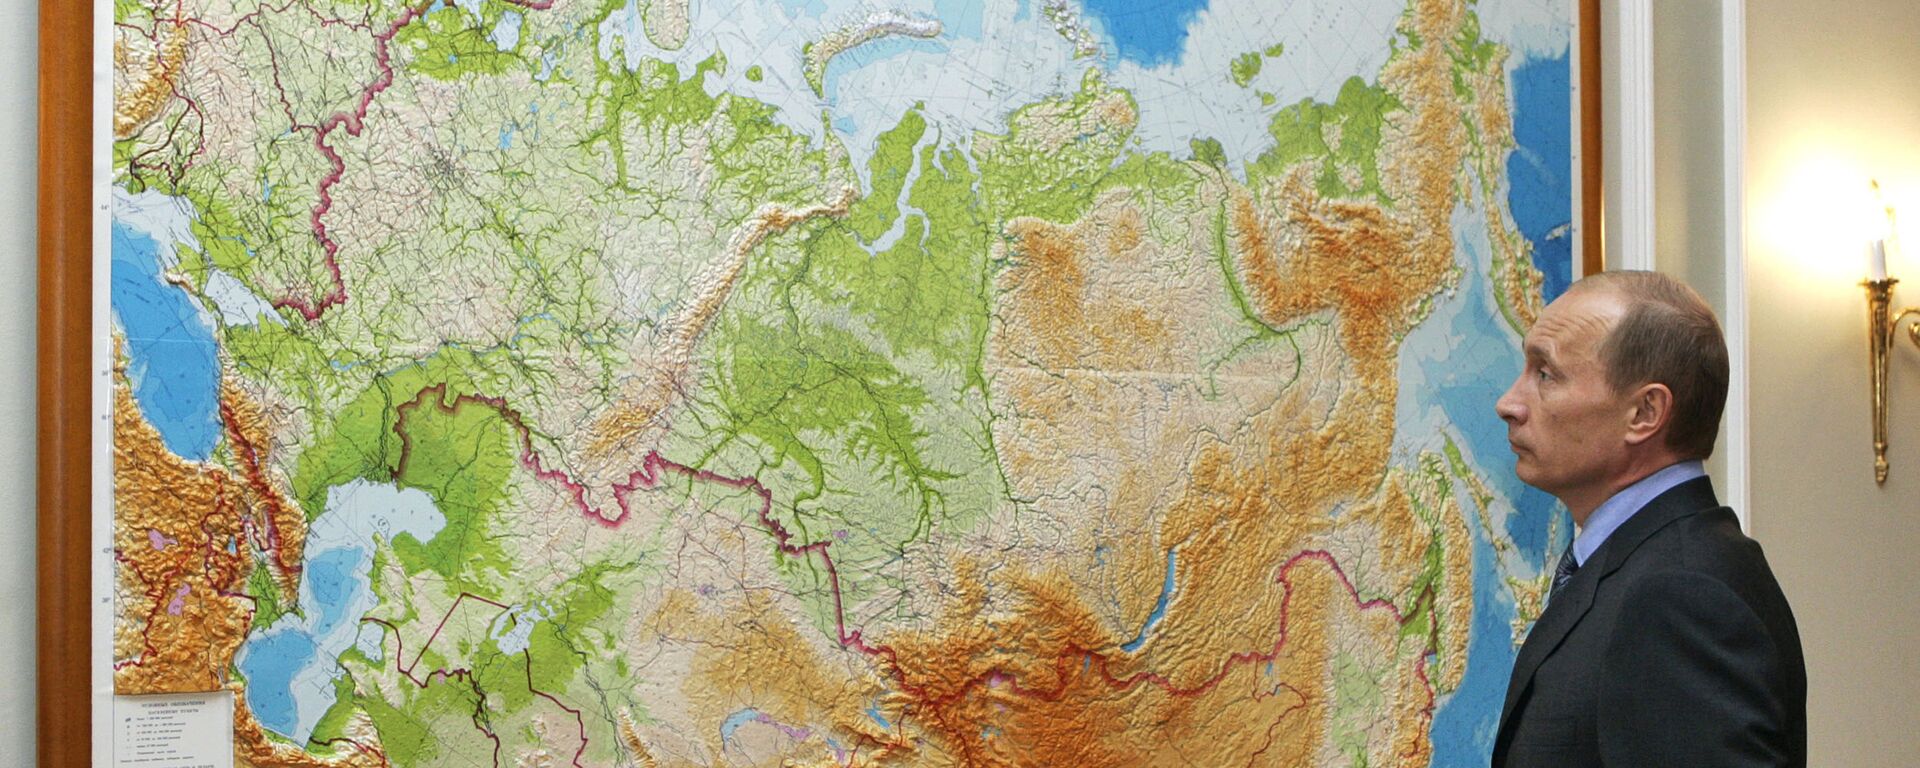 Ruski predsednik Vladimir Putin proučava kartu svoje zemlje - Sputnik Srbija, 1920, 09.12.2021